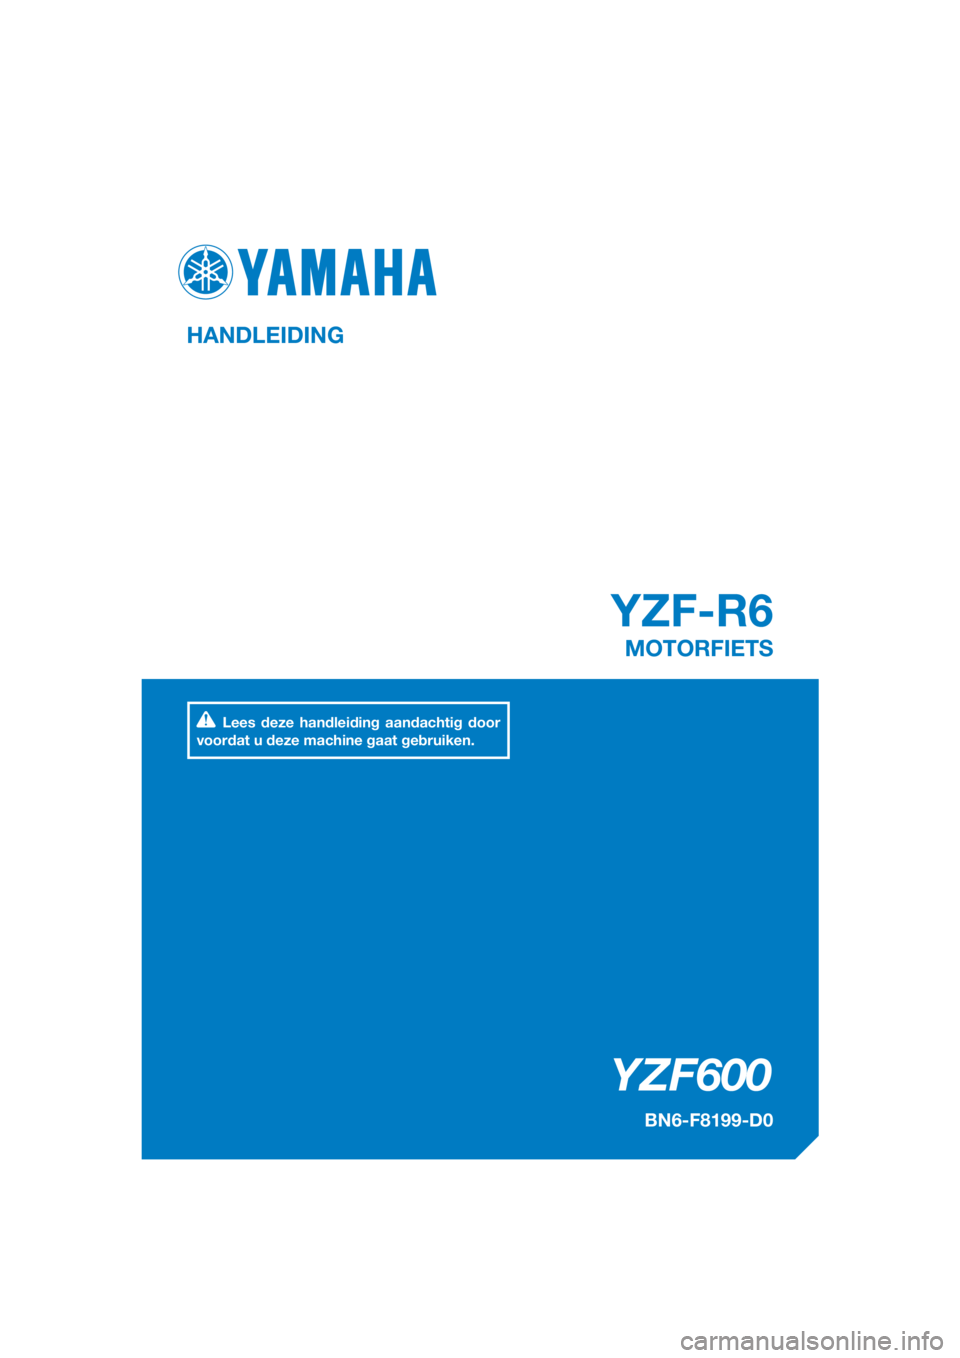 YAMAHA YZF-R6 2017  Instructieboekje (in Dutch) DIC183
YZF600
YZF-R6
HANDLEIDING
BN6-F8199-D0
MOTORFIETS
Lees deze handleiding aandachtig door 
voordat u deze machine gaat gebruiken.
[Dutch  (D)] 